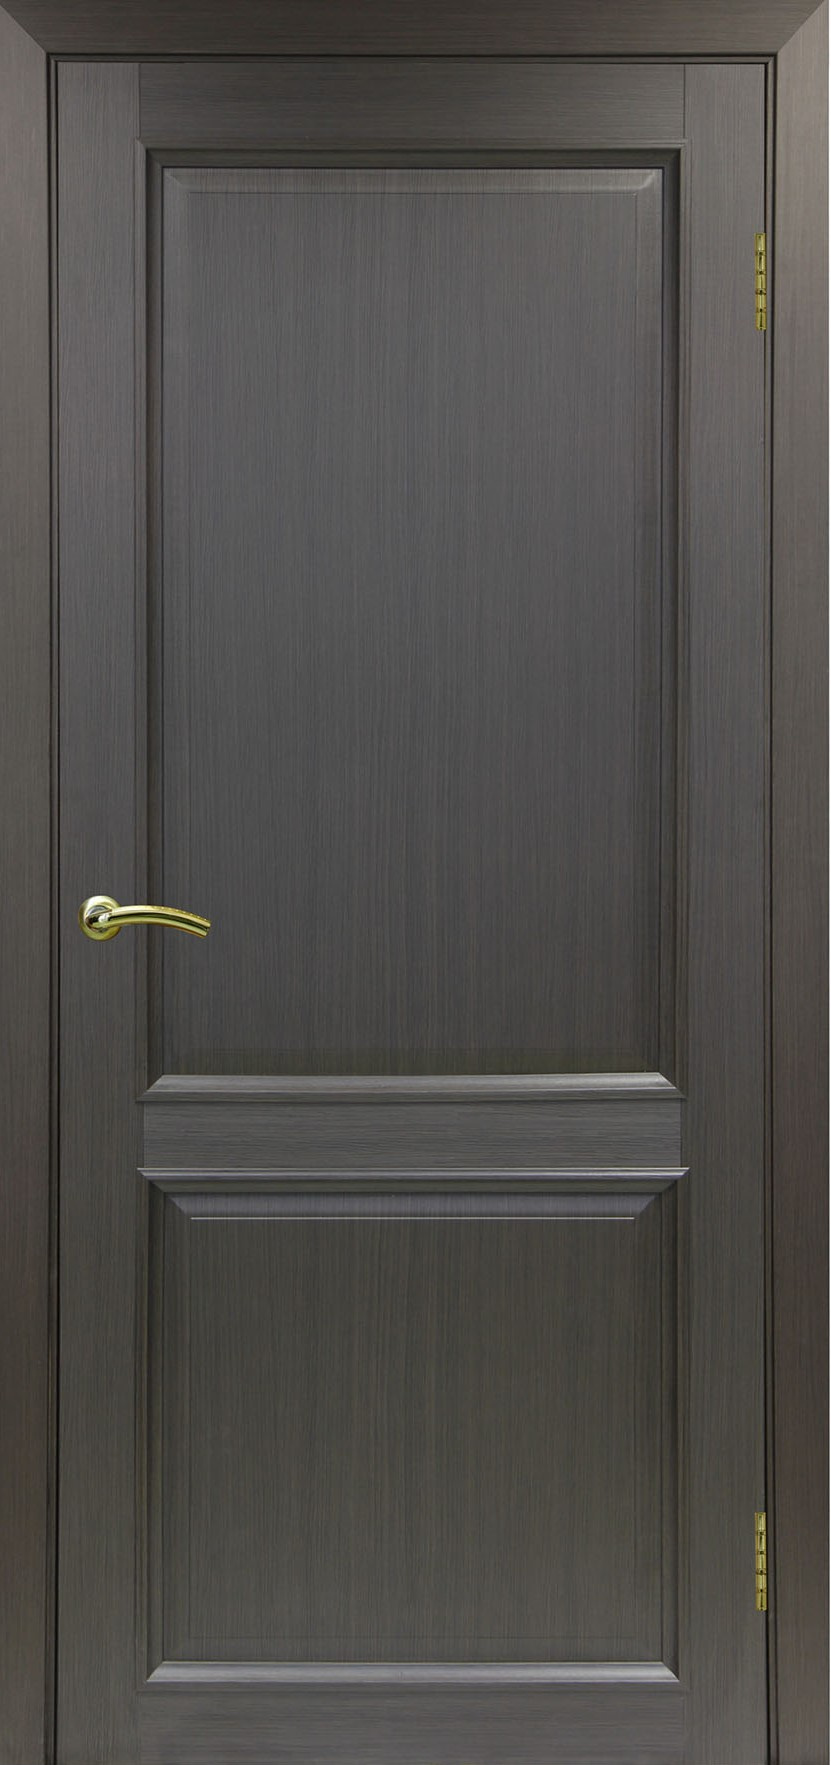 Межкомнатная дверь Тоскана 602 ОФ1.11 багет